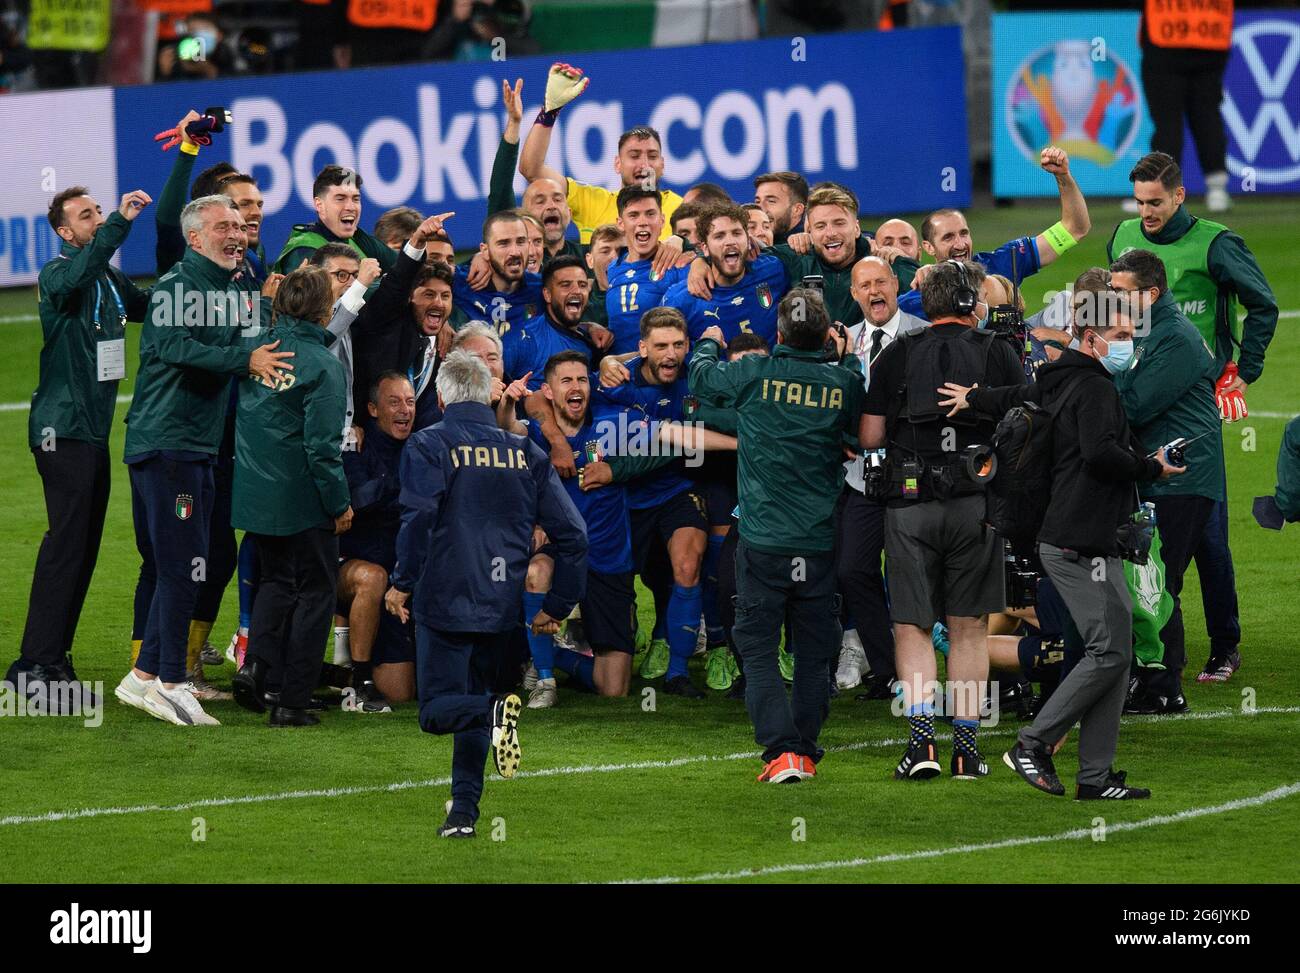 07 juillet 2021 - Italie / Espagne - UEFA Euro 2020 semi-finale - Wembley - Londres l'équipe italienne célèbre la victoire sur l'Espagne dans la demi-finale DE L'EURO 2020 après une fusillade de pénalité. Crédit photo : © Mark pain / Alamy Live News Banque D'Images